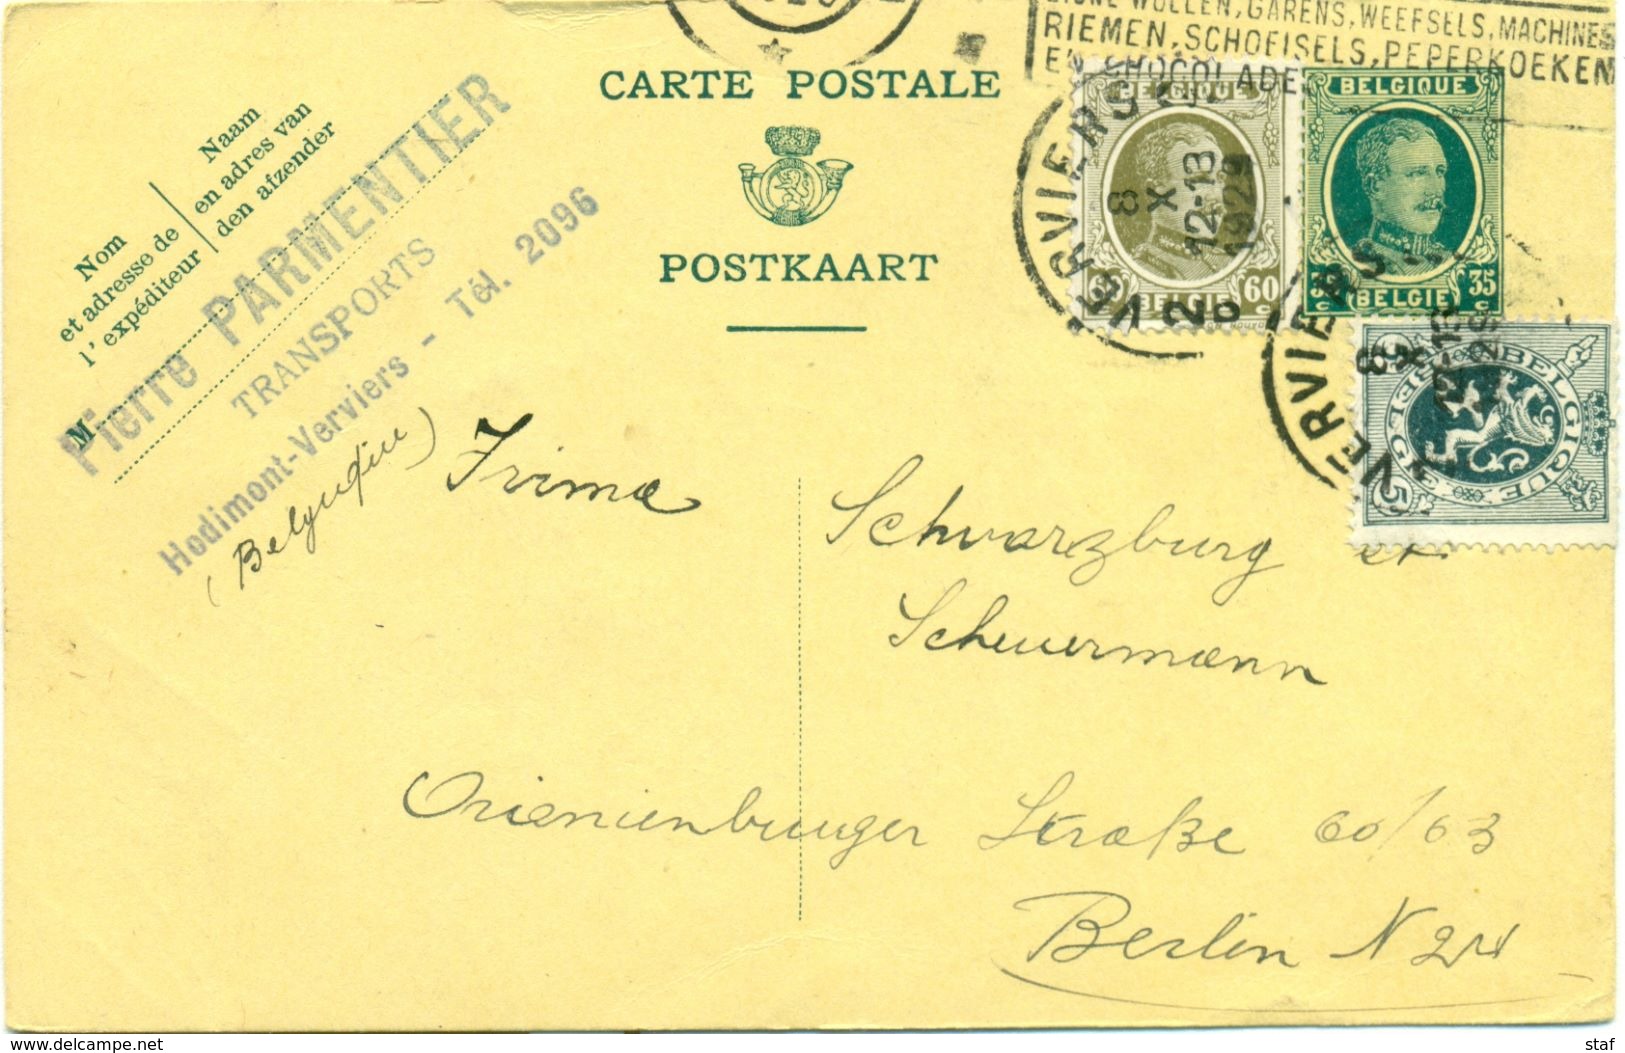 Carte Postale De Pierre Parmentier Transports à Hodimont - Verviers : 1929 - Verkehr & Transport